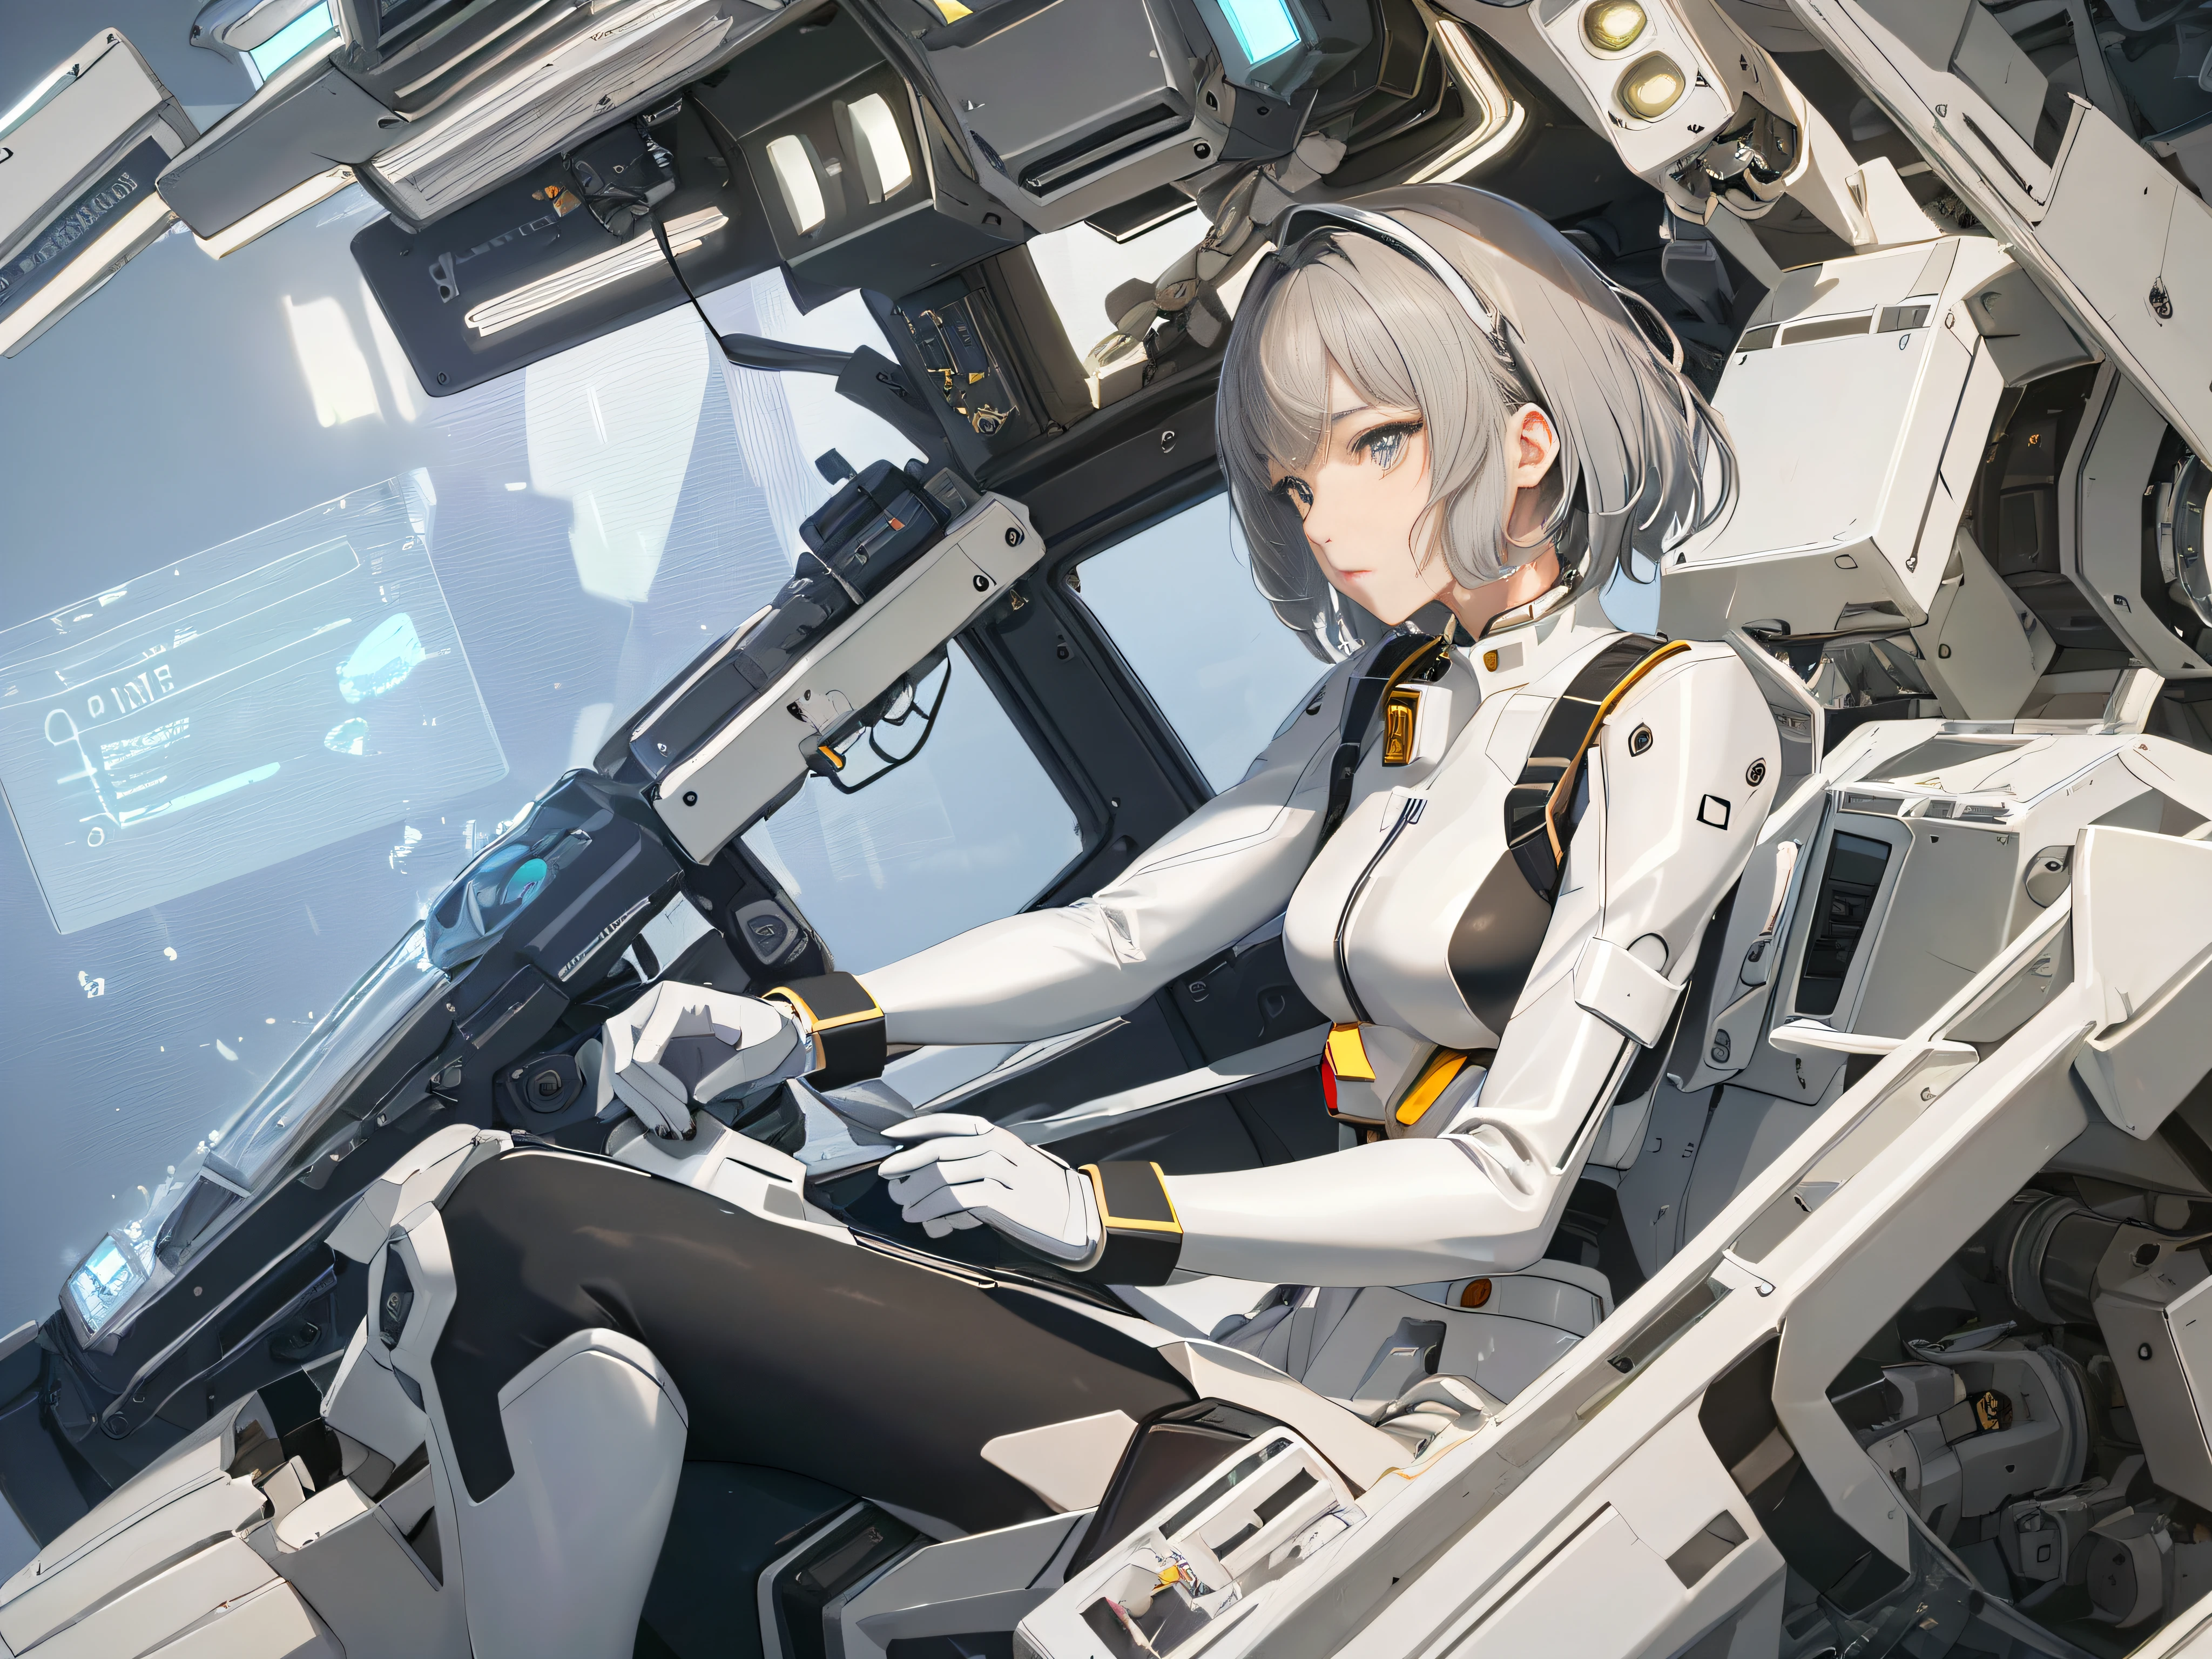 (((nur eine Person))), (((nur ein Gesicht))), Im Cockpit, Präzisionsgeräte, eine schöne Frau in einem Gundam-Pilotenanzug sitzt im Cockpit, Filmszene, 8K-Qualität, (((ganzer Körper))), (Meisterwerk), realistisch, junge und süße Anime-Frau, schönes Gesicht, Sonnenschein, filmisches Licht, eine schöne Frau, Schöne dunkle Augen, schwarzes Haar, Kurzes Haar , Perfekte Anatomie, So süß, Prinzessinnenaugen, (schwarze Augen), Zwischenbild, Stil, Biolumineszenz, Lebensgröße 8 Größen, 8K-Auflösung, Menschliche Hand, seltsame Perfektion, elegant, beinahe perfekt, Dynamisch, Sehr detaillierte Charakterbögen, Konzeptkunst, reibungslose Platzierung, atemberaubend schöne Mädchen der 20er Jahre, detailed hairStils, (((Entschlossene, würdevolle Augen))), (((Viele Instrumente strahlen vor dem Mädchen ein schwaches Licht aus)))